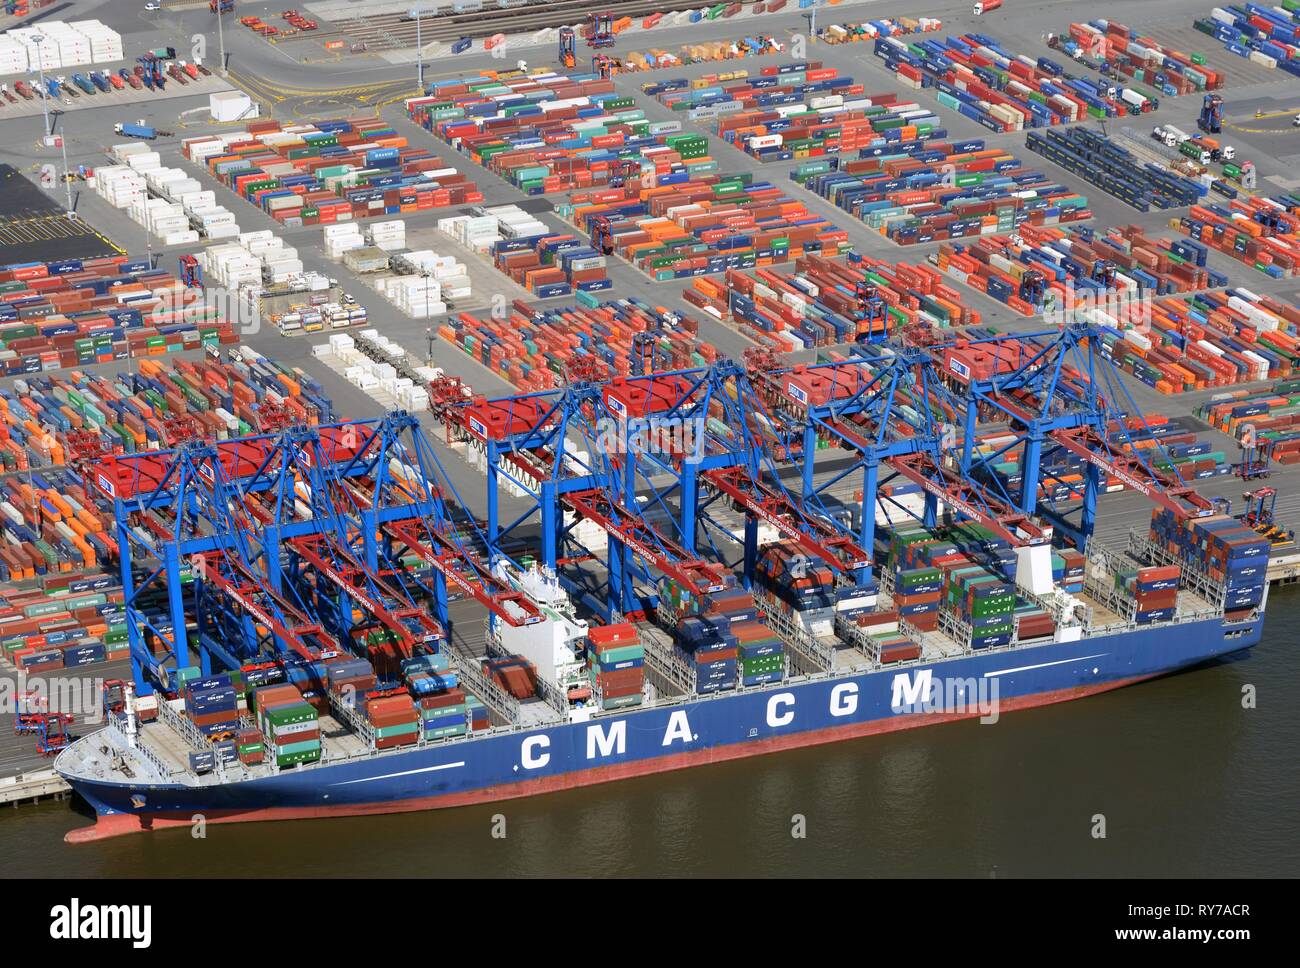 Buque portacontenedores CMA CGM en el puerto de contenedores, carga de contenedores, Hamburgo, Alemania. Foto de stock